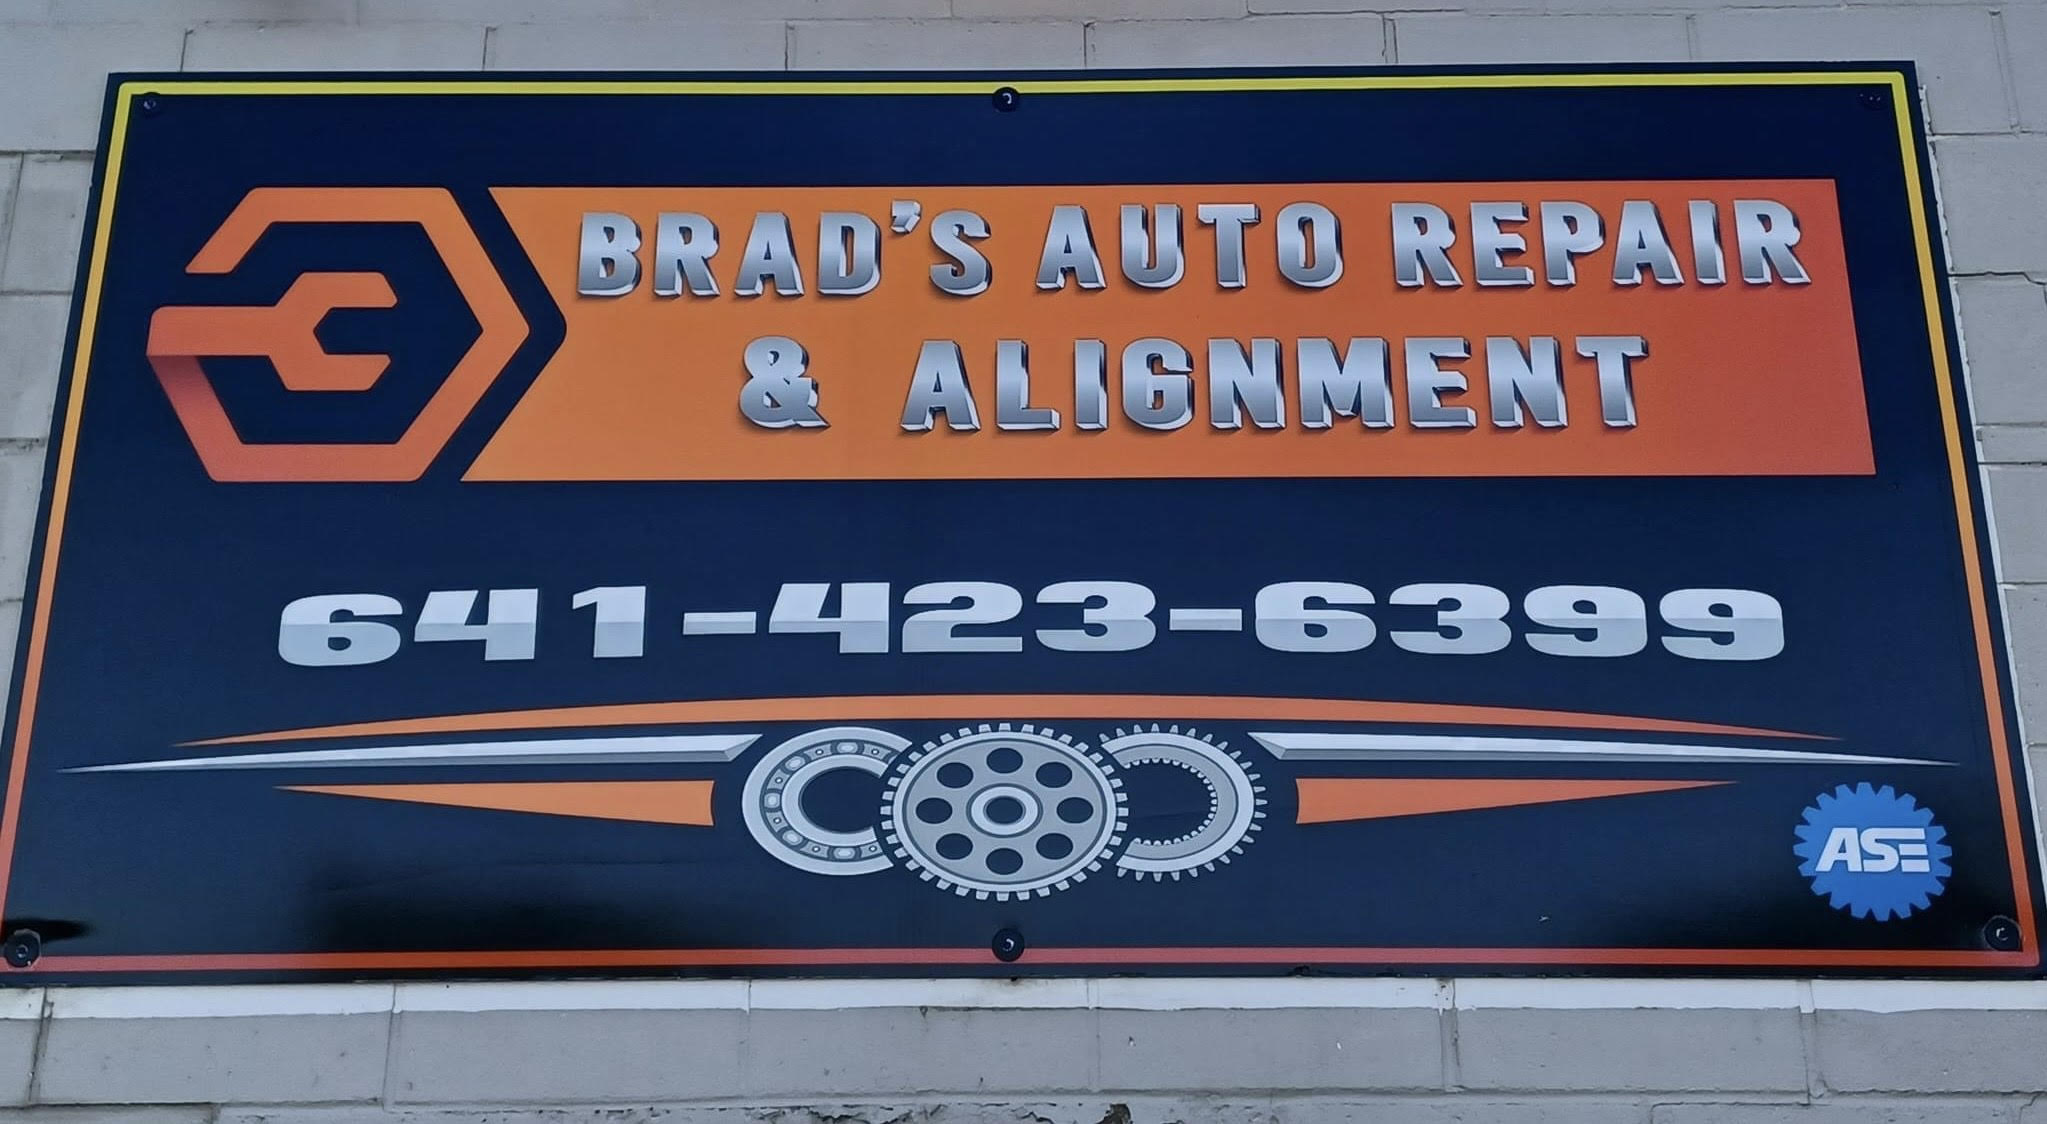 Brad’s Auto Repair